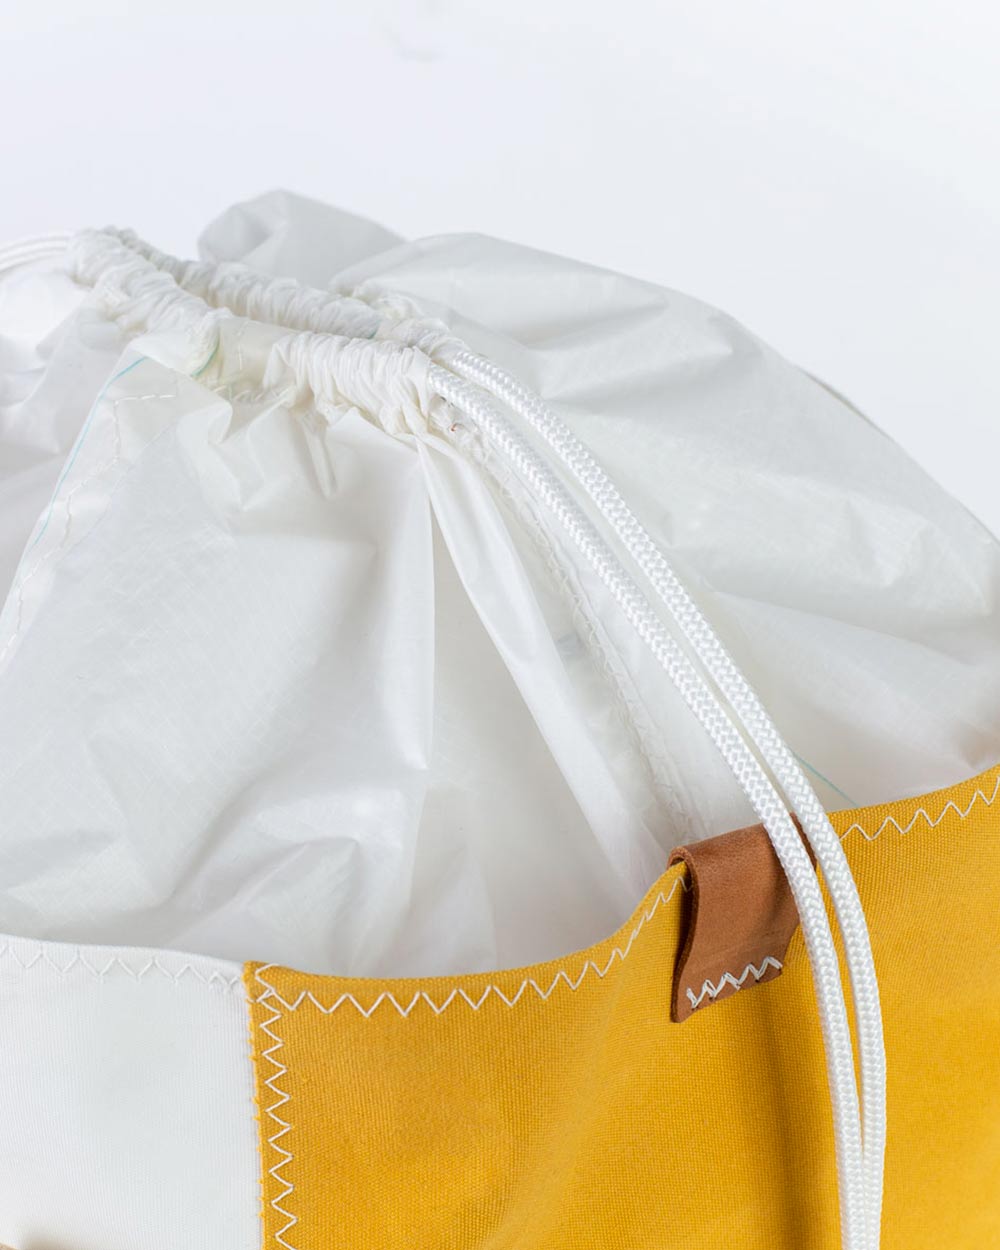 Damen Handtasche "Bucket Bag" by 727 Sailbags / Segeltuch weiß gelb / Boden grau